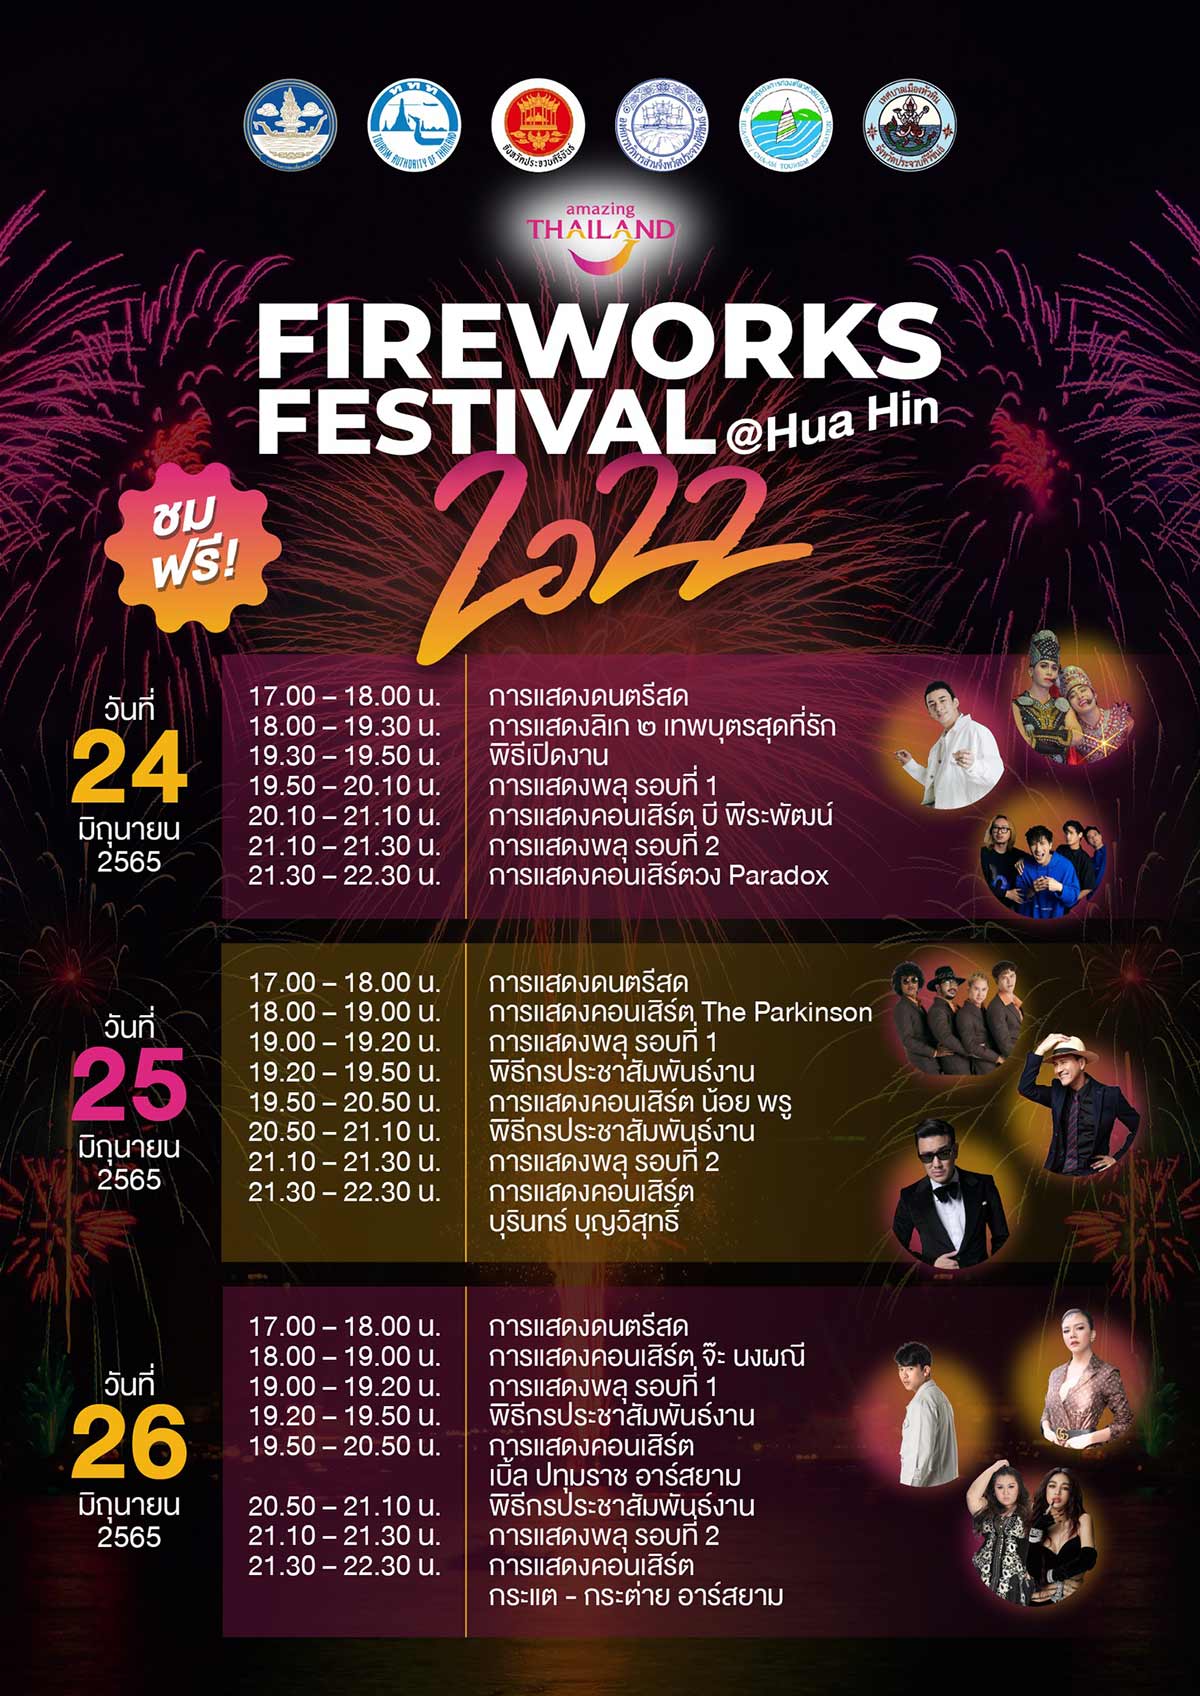 งานพลุหัวหิน Firework Festival @ Hua Hin 2022 วันที่ 24-26 มิ.ย.นี้ ที่ชายหาดเขาตะเกียบ